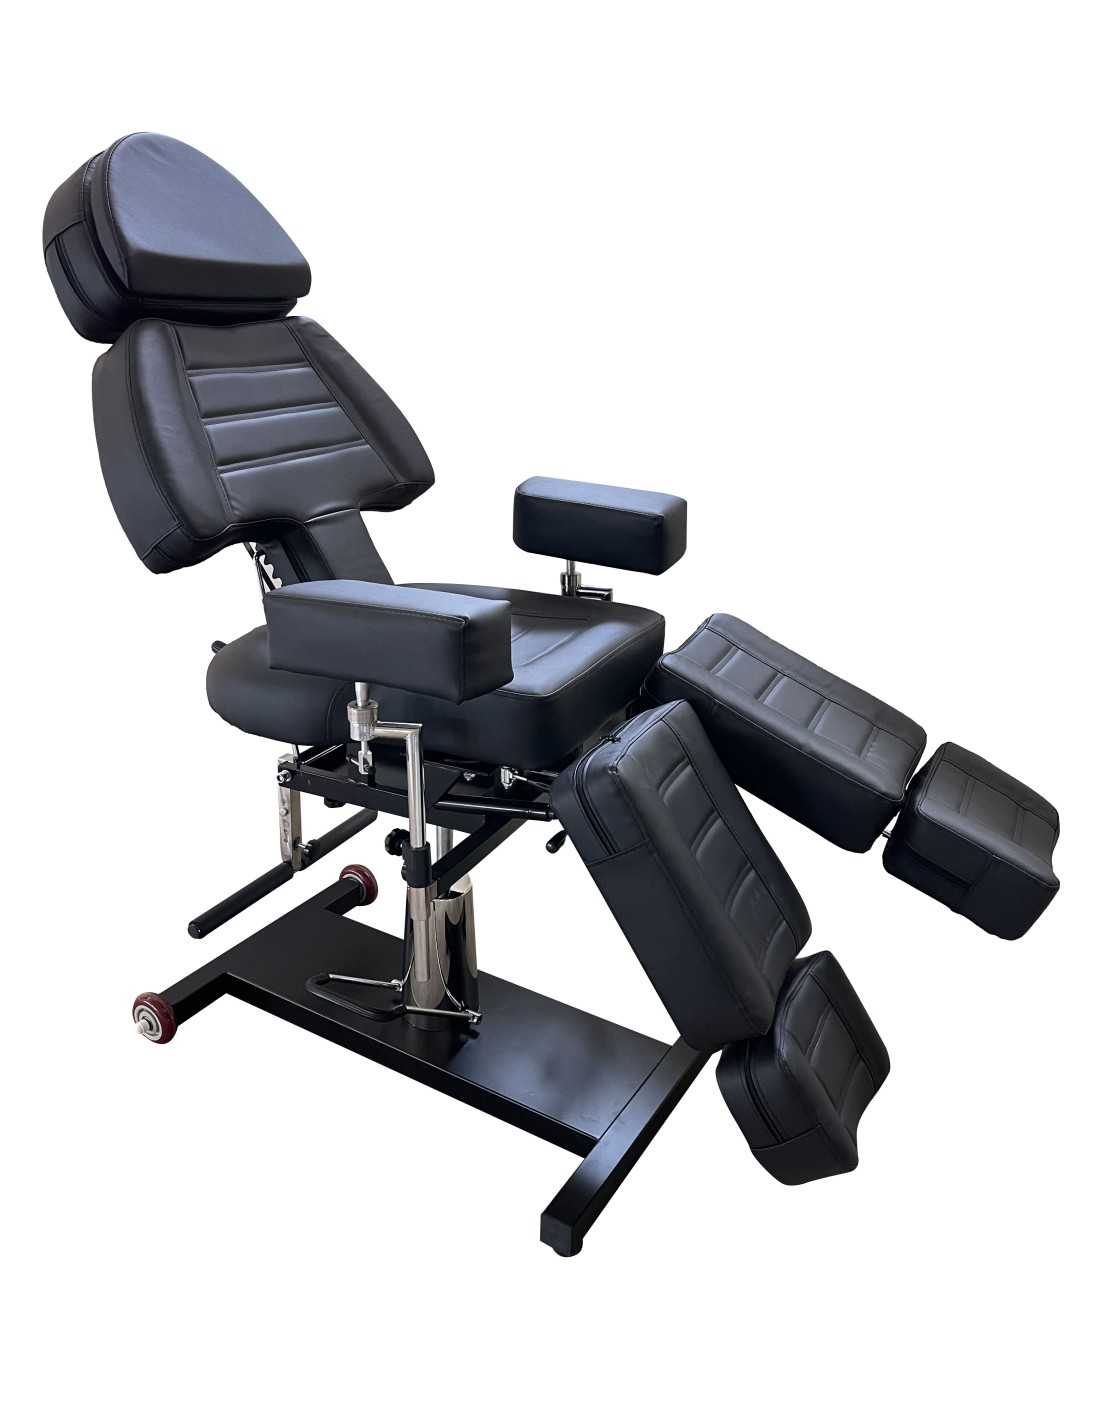 Adjustable Tattoo client chair bed Hydraulic tattoo chair tattoo furniture  black | eBay